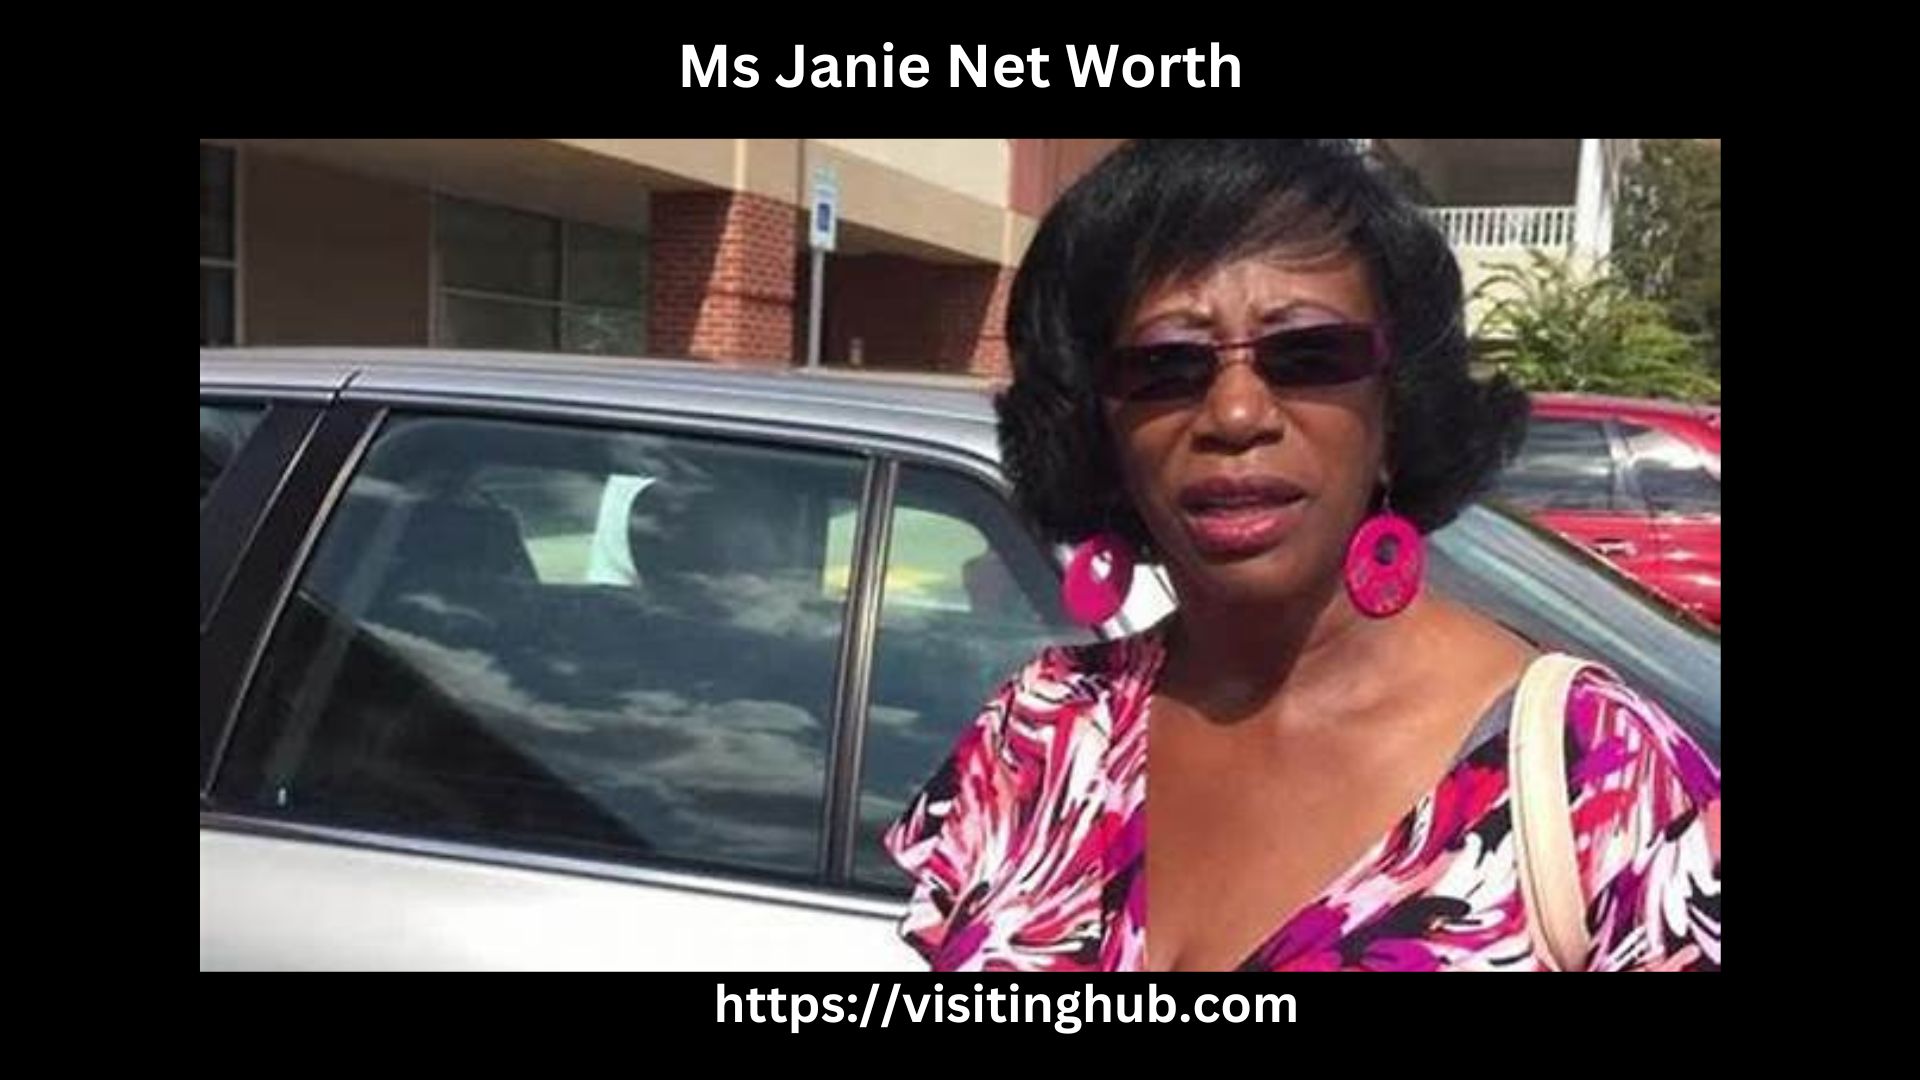 Ms Janie Net Worth